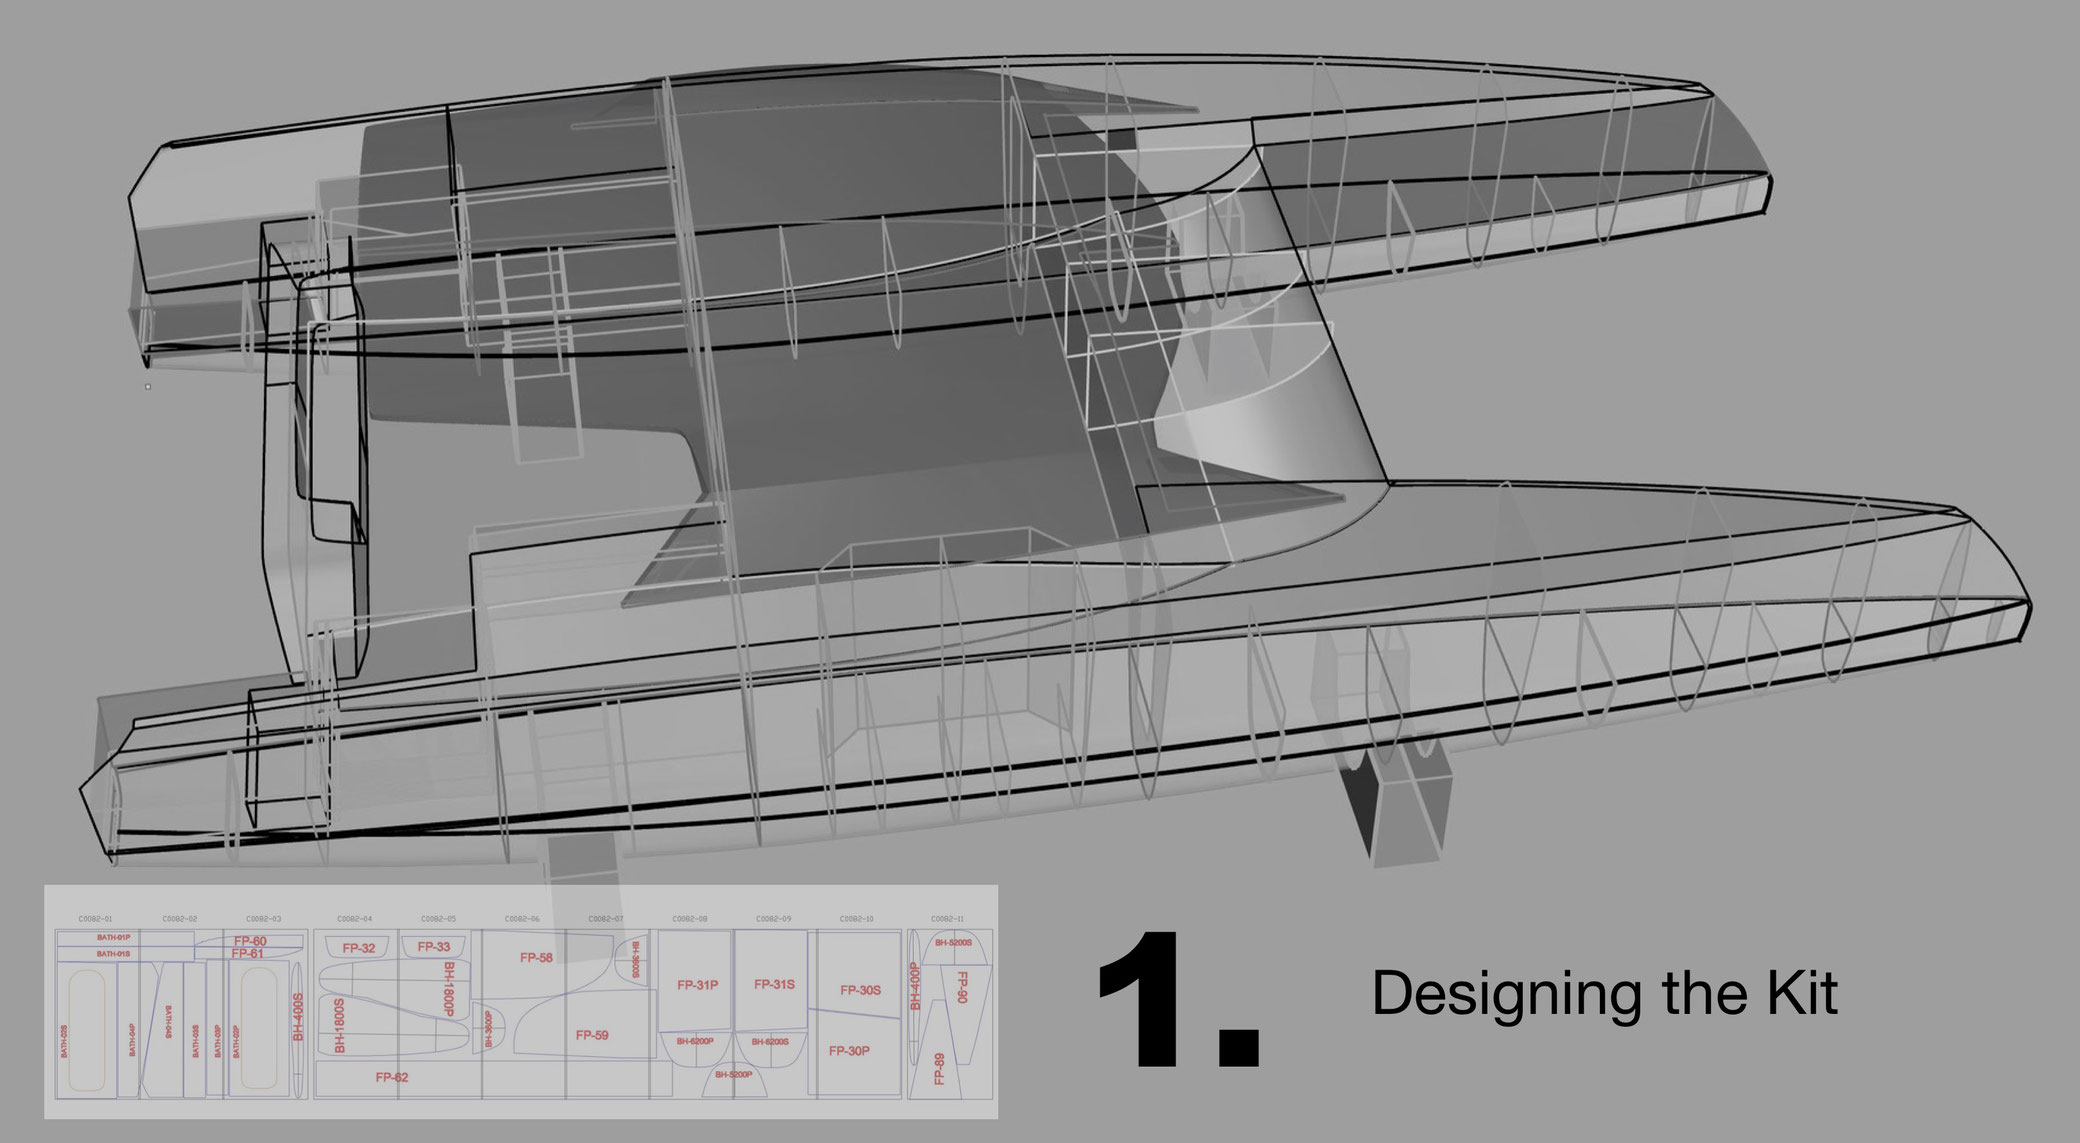 catamaran hull design plans